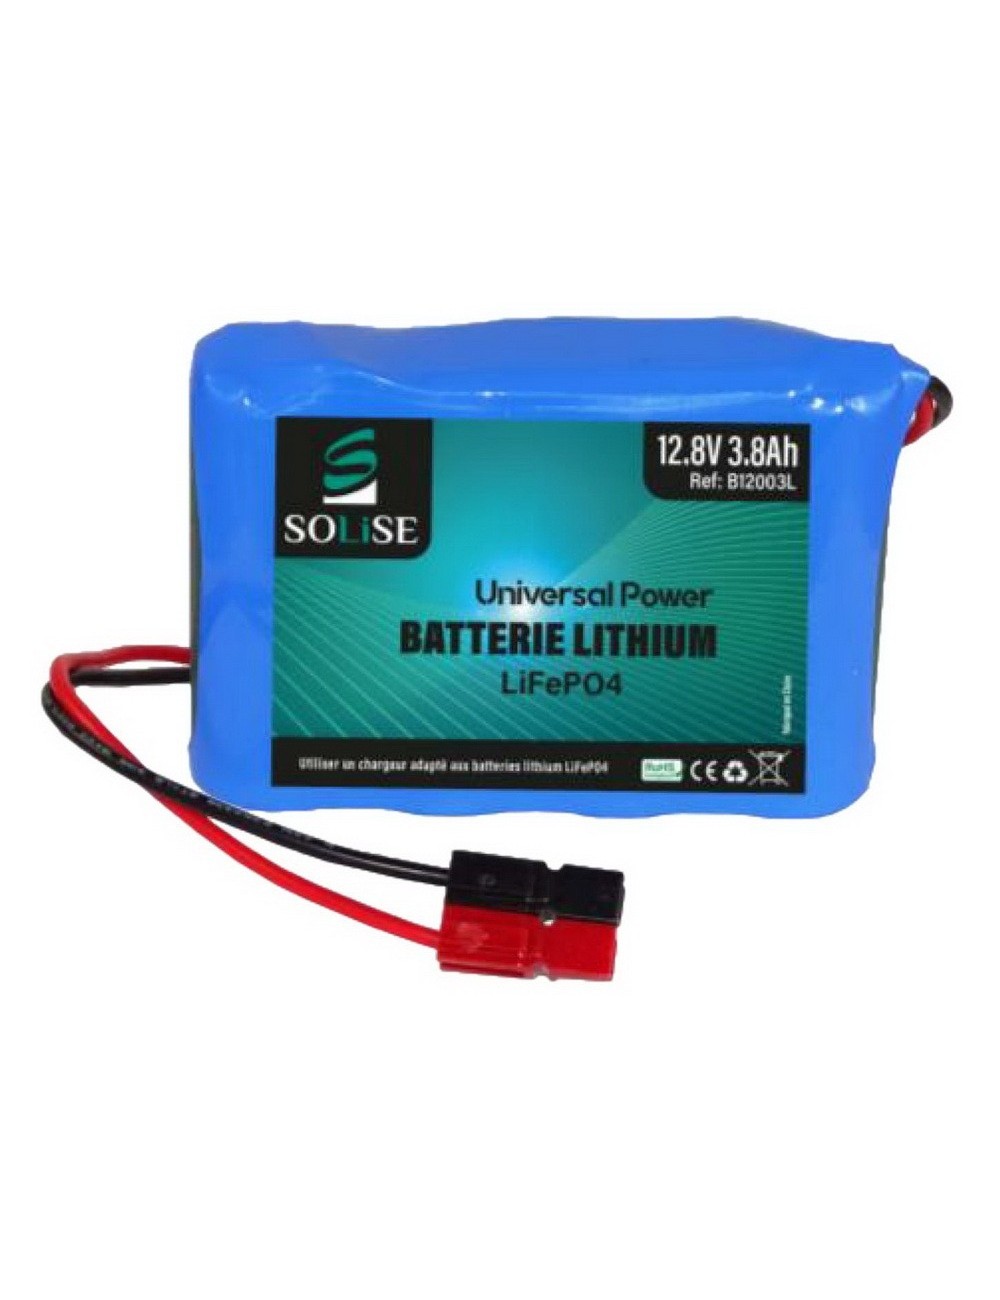 Batterie au lithium-ion de remplacement au plomb 12.8V 10Ah